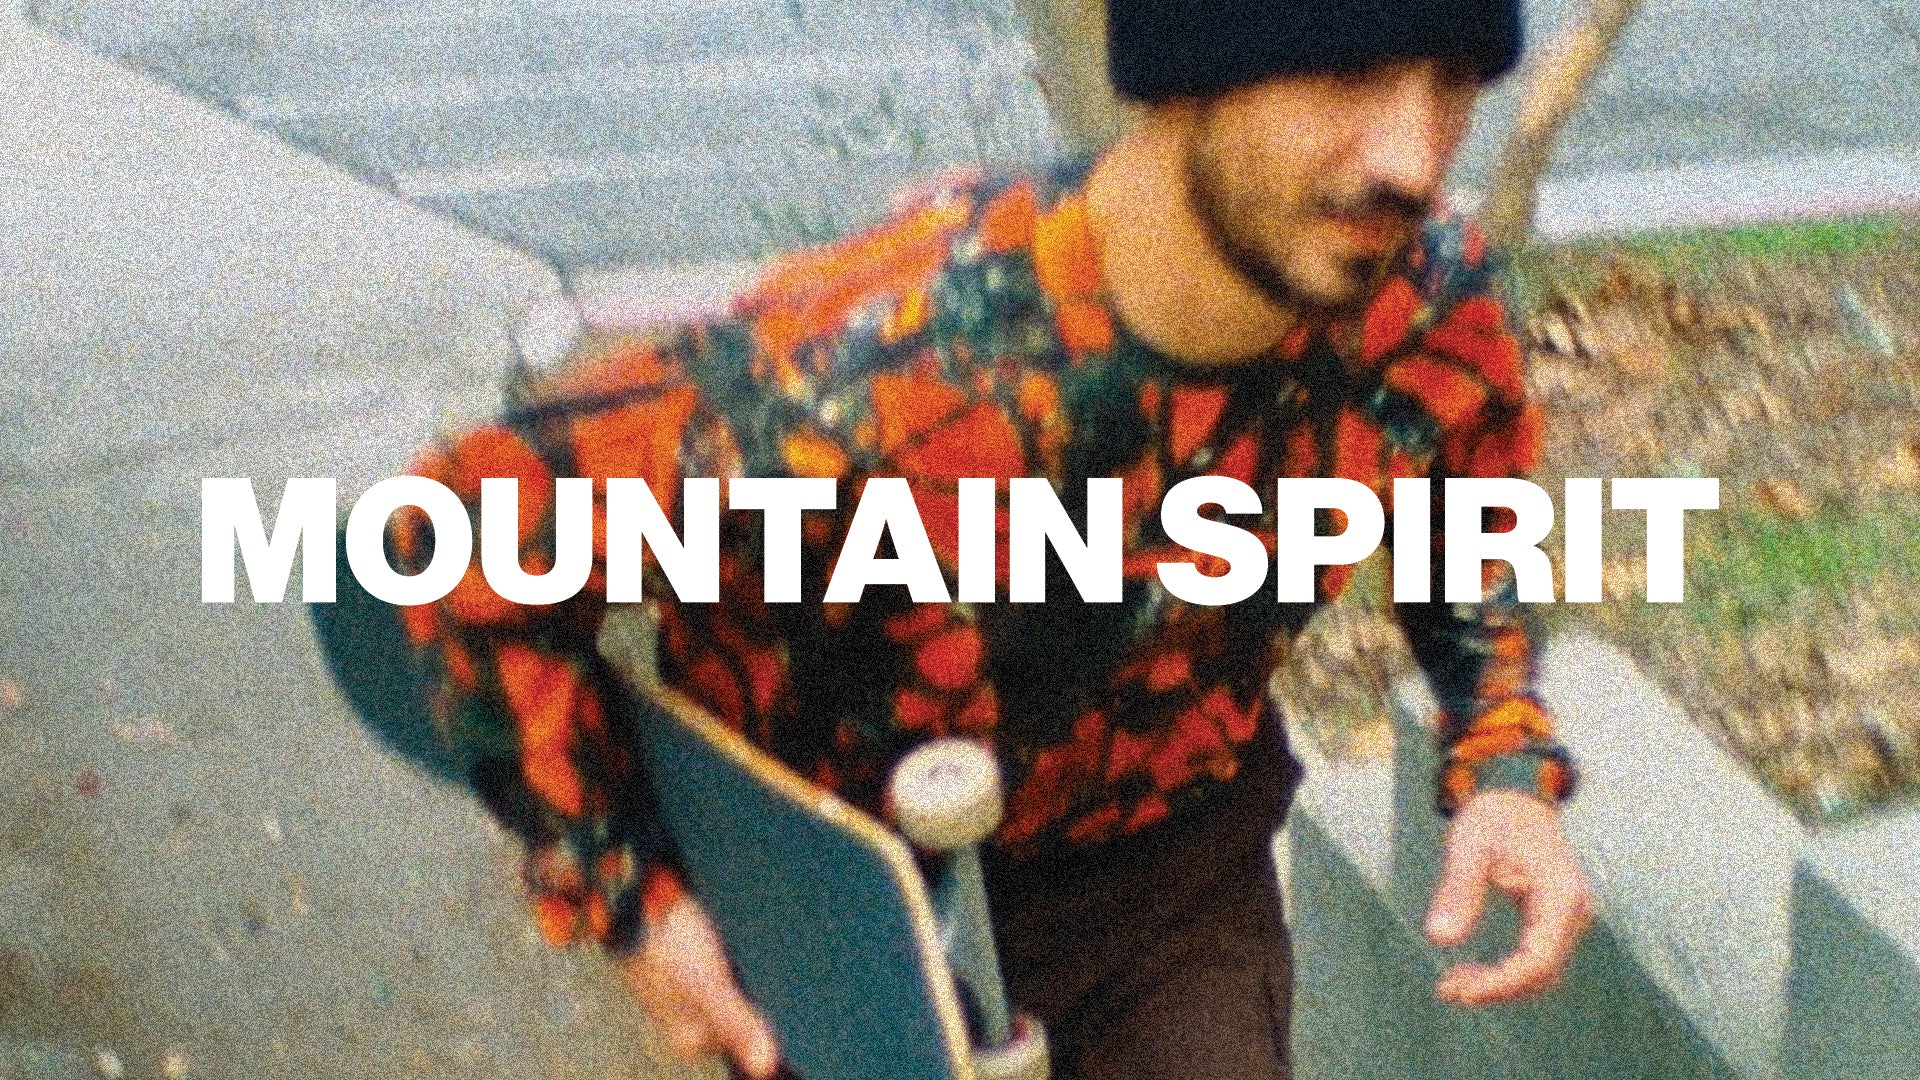 Load video: Mountain Spirit Globe Maalouf